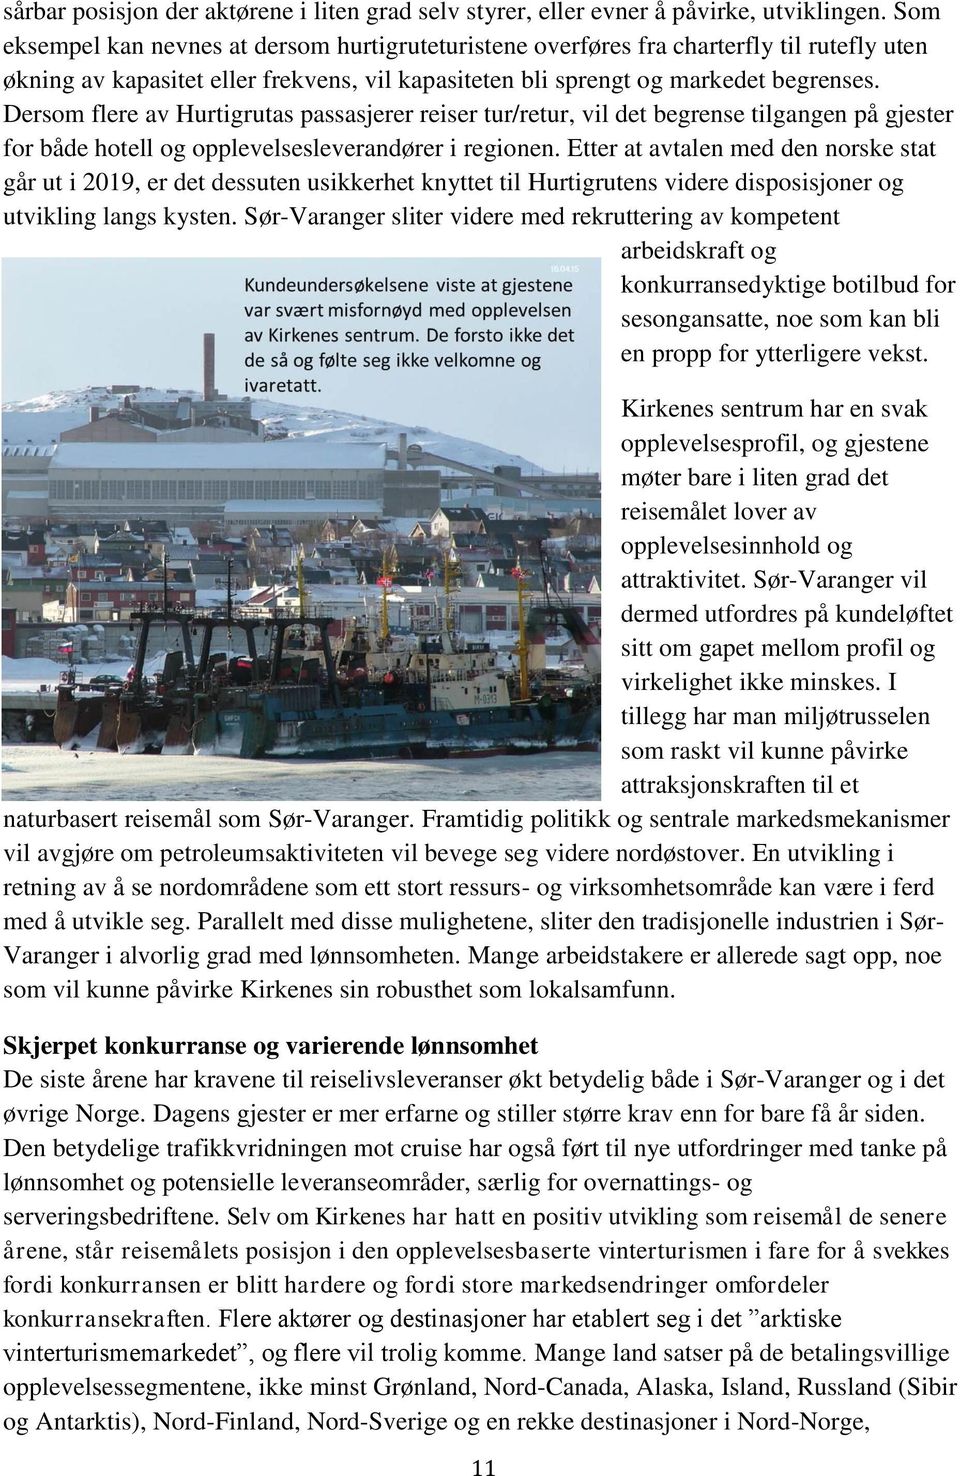 Dersom flere av Hurtigrutas passasjerer reiser tur/retur, vil det begrense tilgangen på gjester for både hotell og opplevelsesleverandører i regionen.